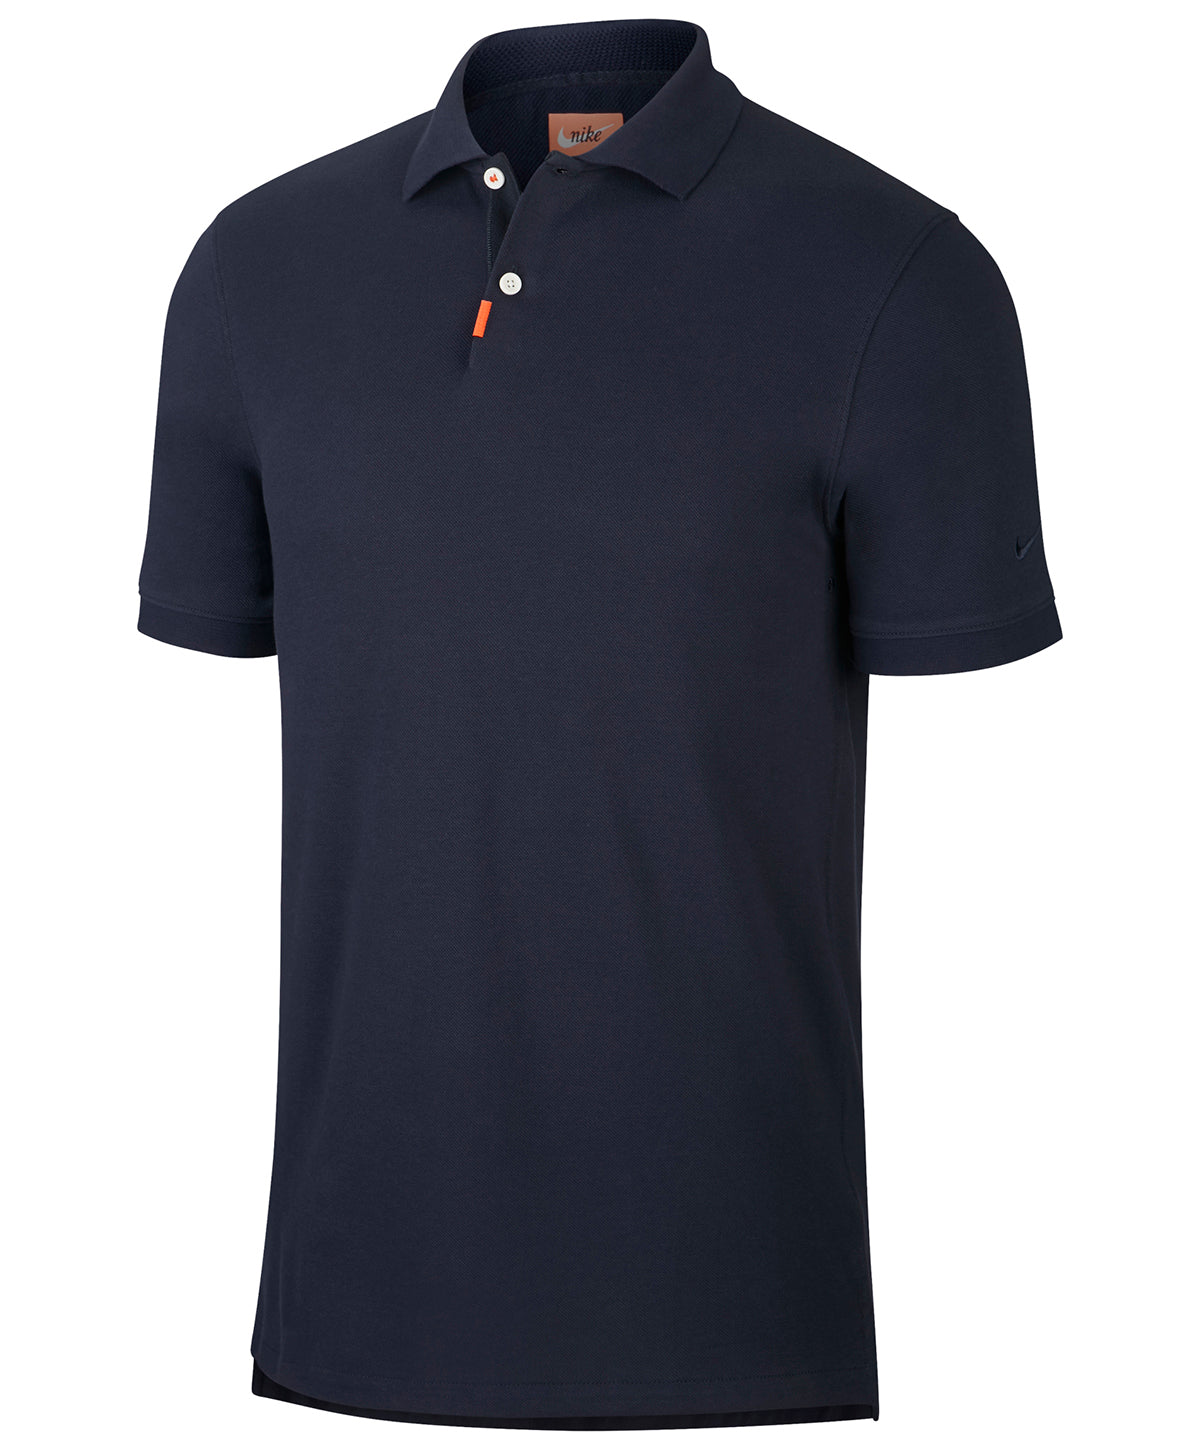 Personalised Polo Shirts - Black Nike Nike polo slim